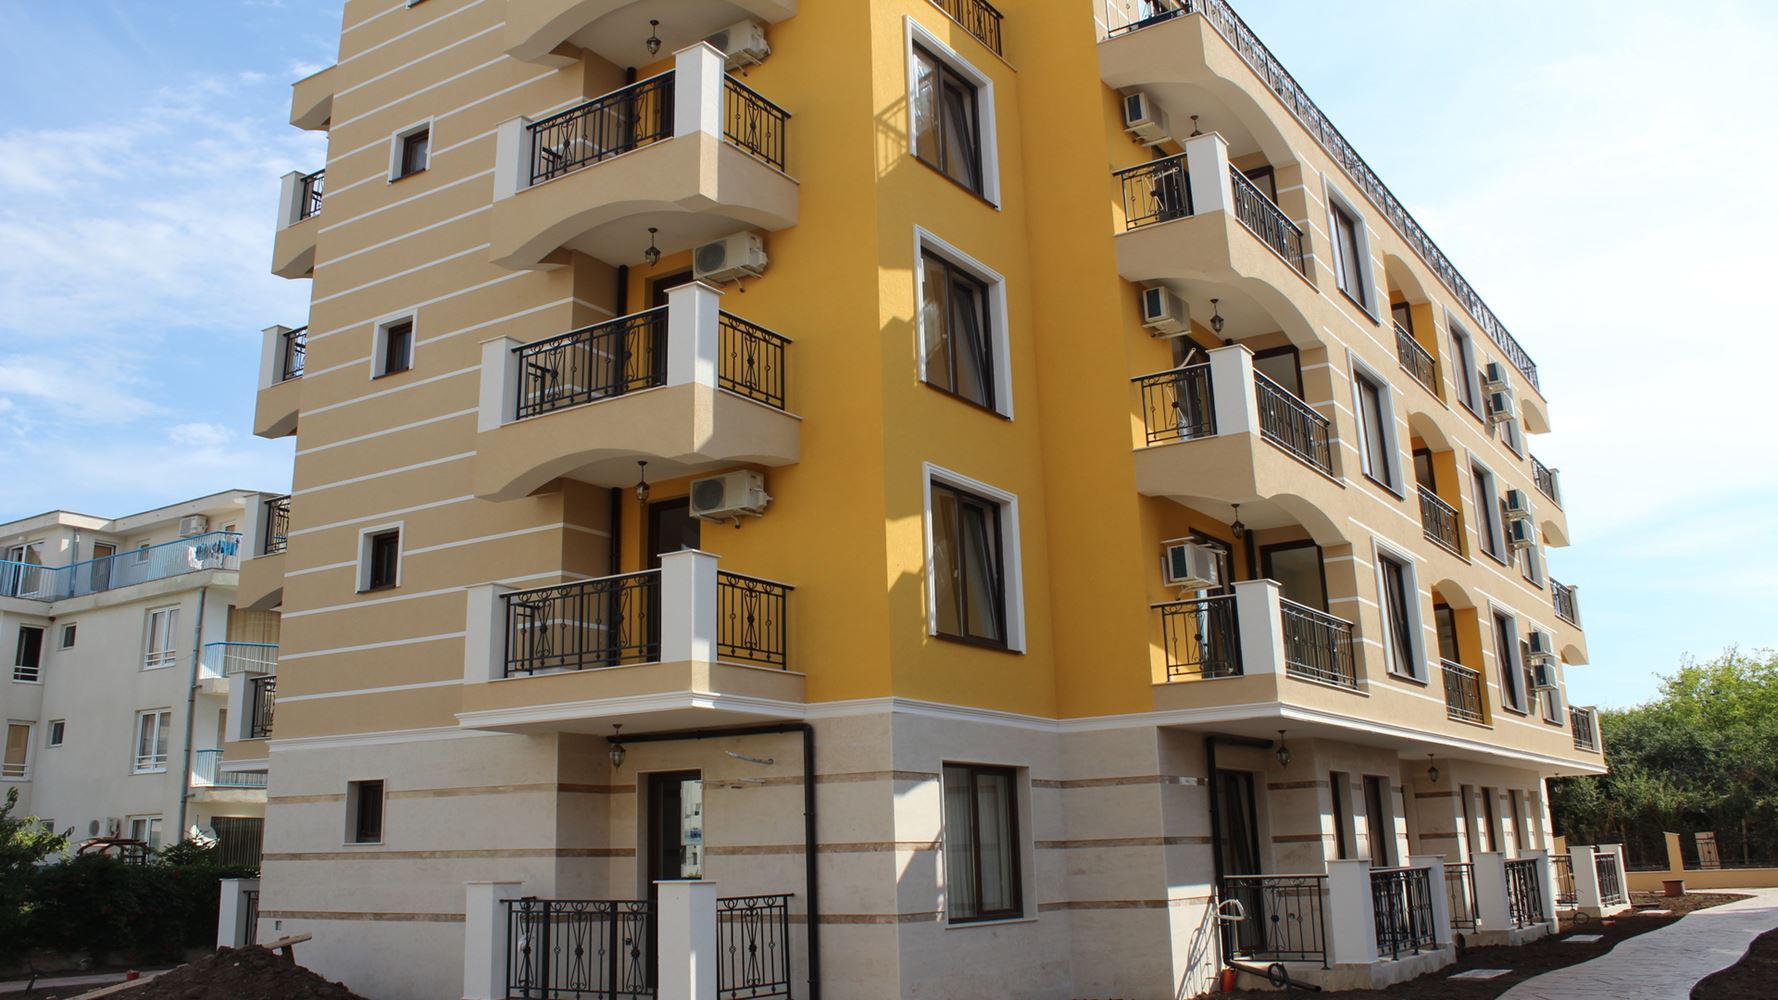 Купить квартиру в болгарии для пмж аренда дома в испании на длительный срок